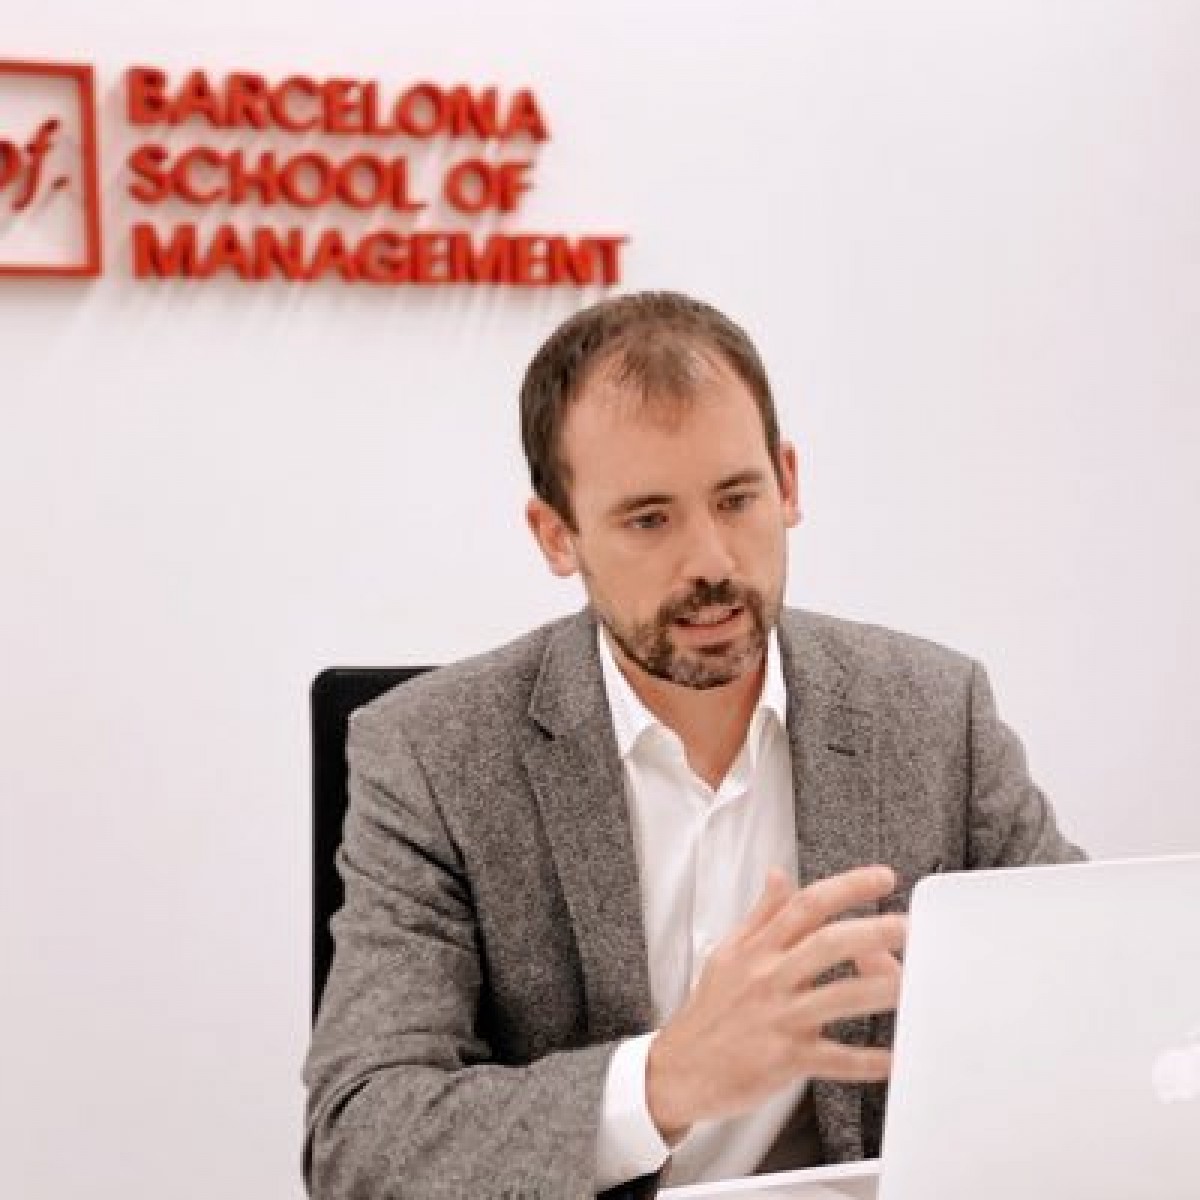 El solsoní Oriol Montanyà, professor de la UPF Barcelona School of Management, pronunciarà una xerrada i conduirà una posterior dinàmica